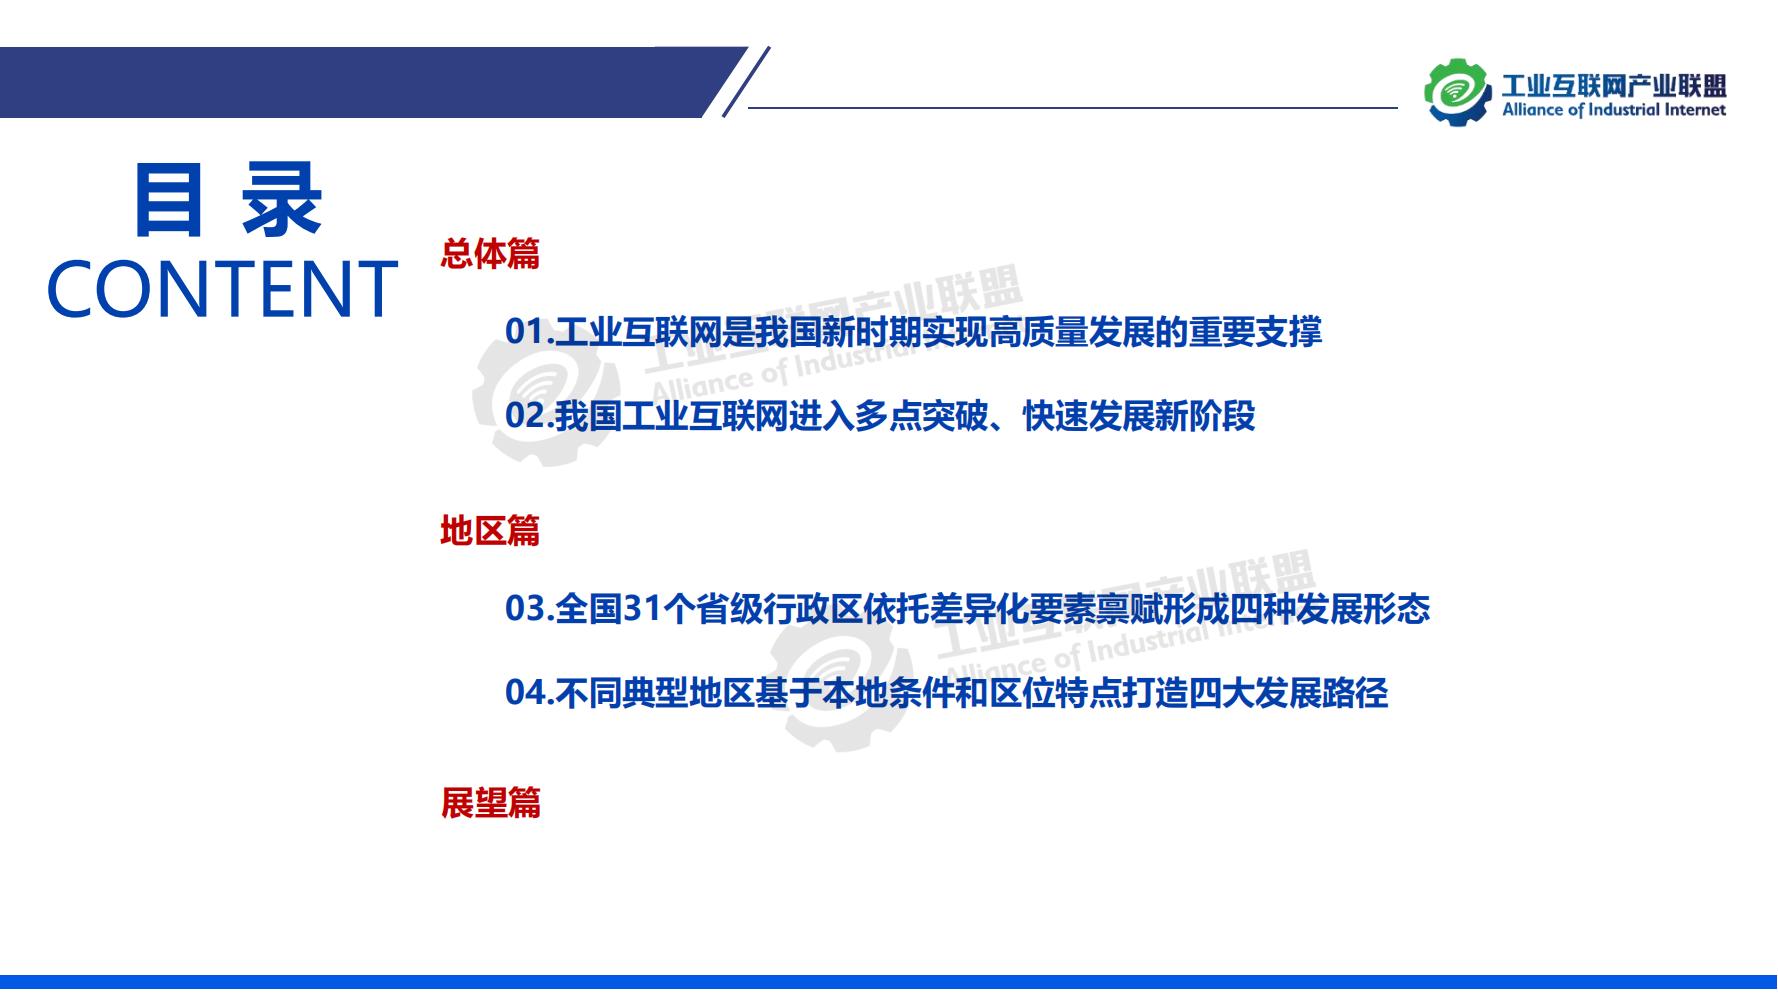 1-中国工业互联网发展成效评估报告-水印_04.jpg